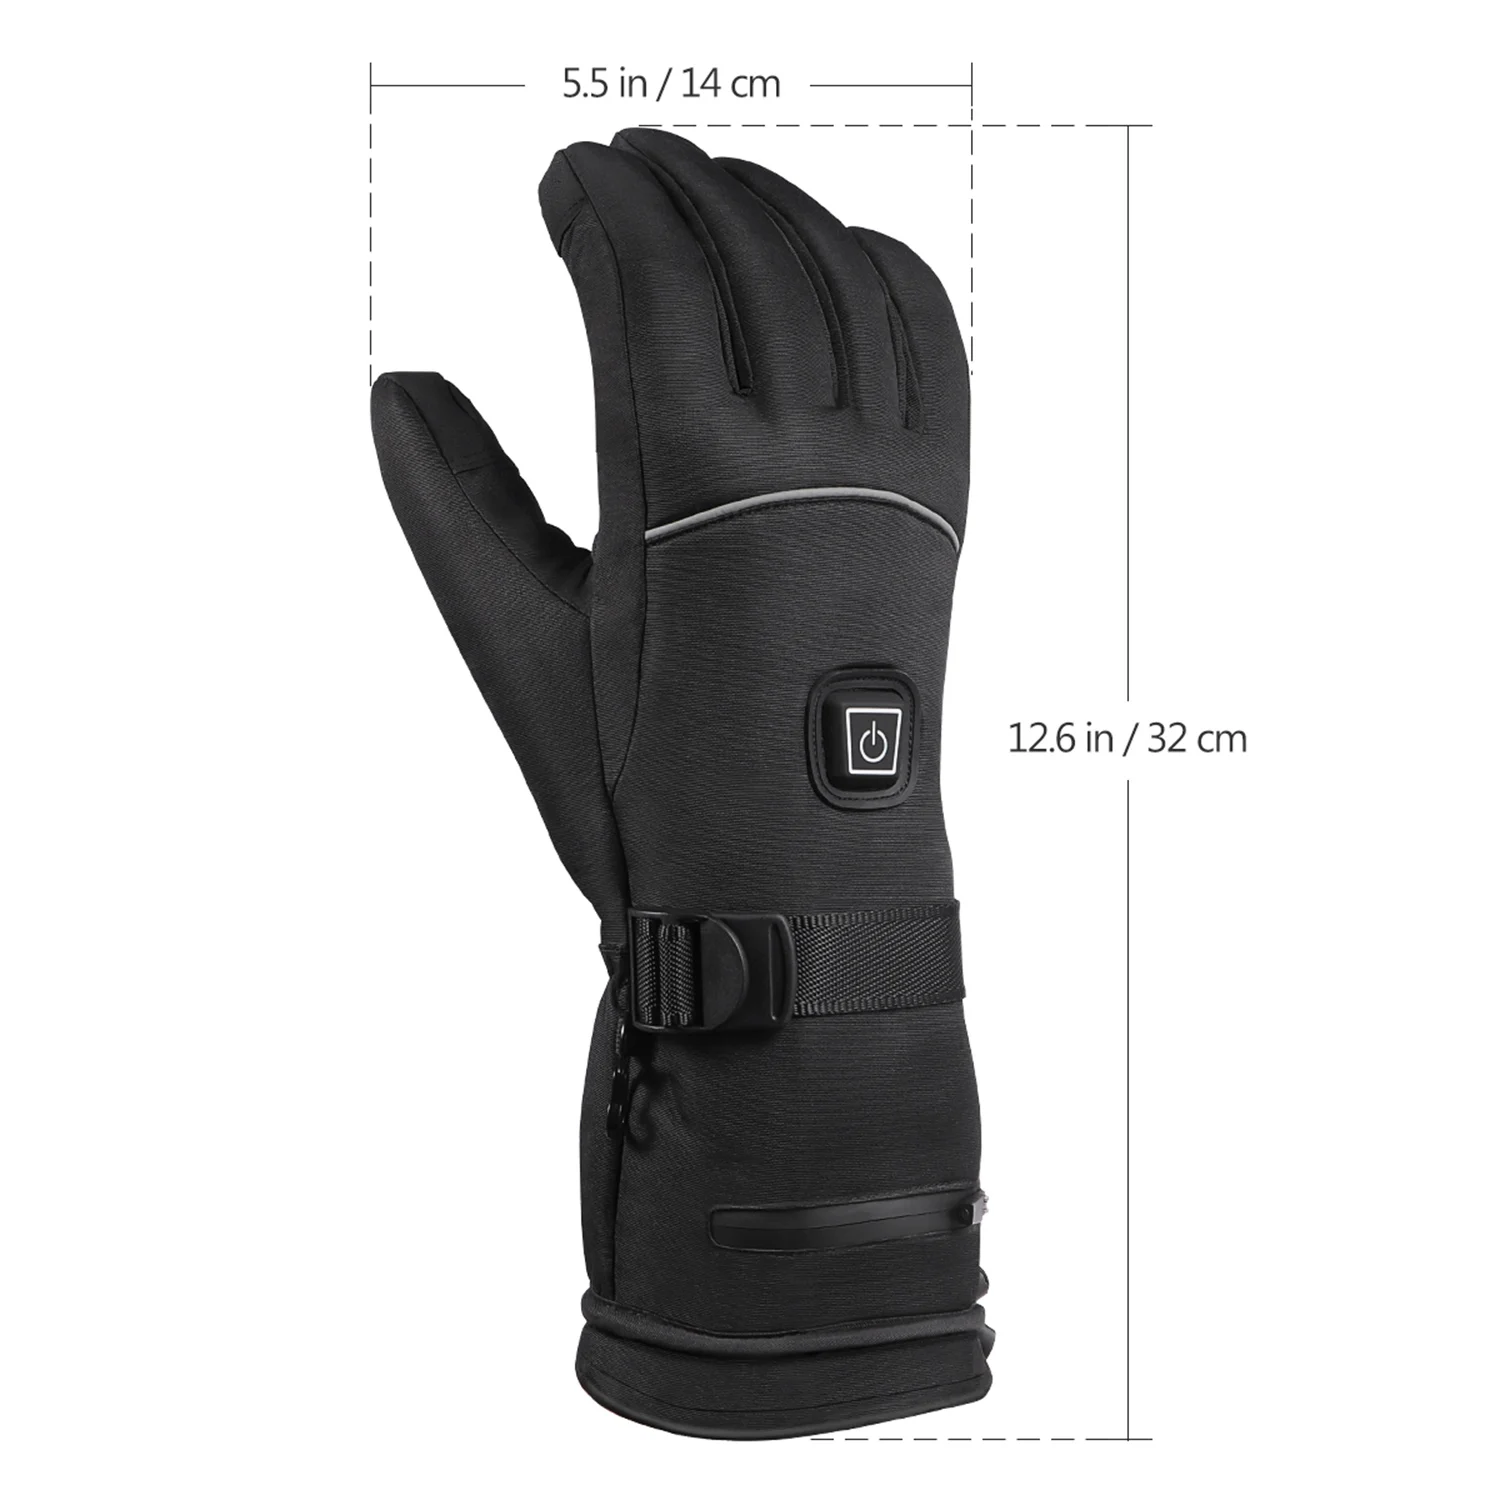 Теплые перчатки с подогревом, водонепроницаемые зимние перчатки с защитой от холода, теплые перчатки с подогревом, 3 уровня контроля температуры для катания на лыжах